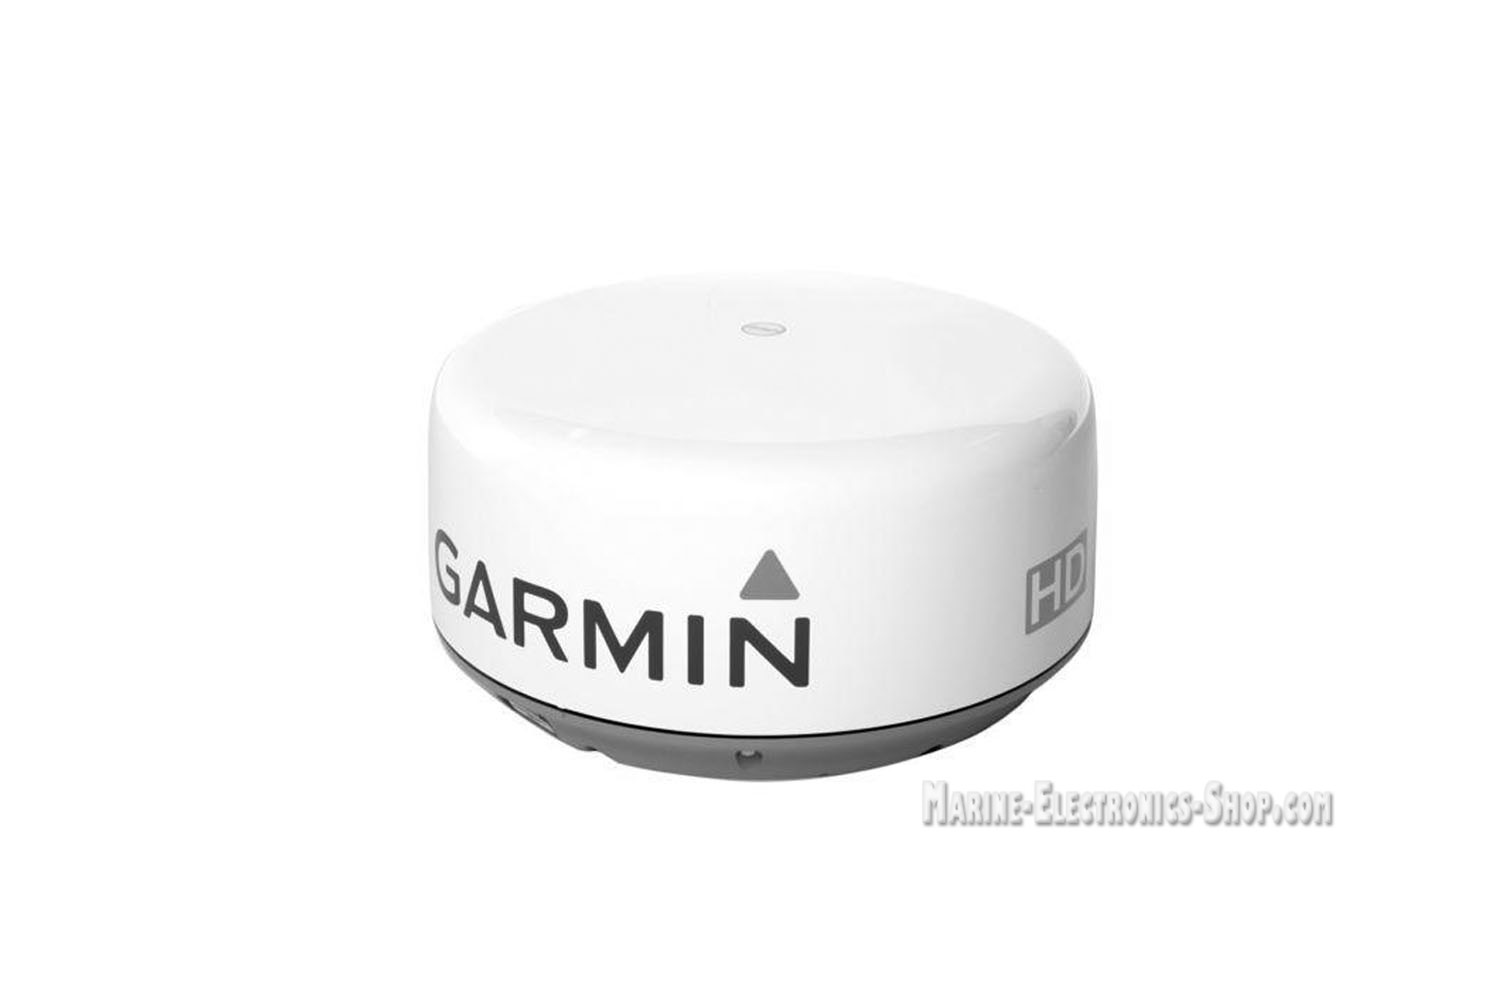 Garmine GMR 18 HD Radome Radar